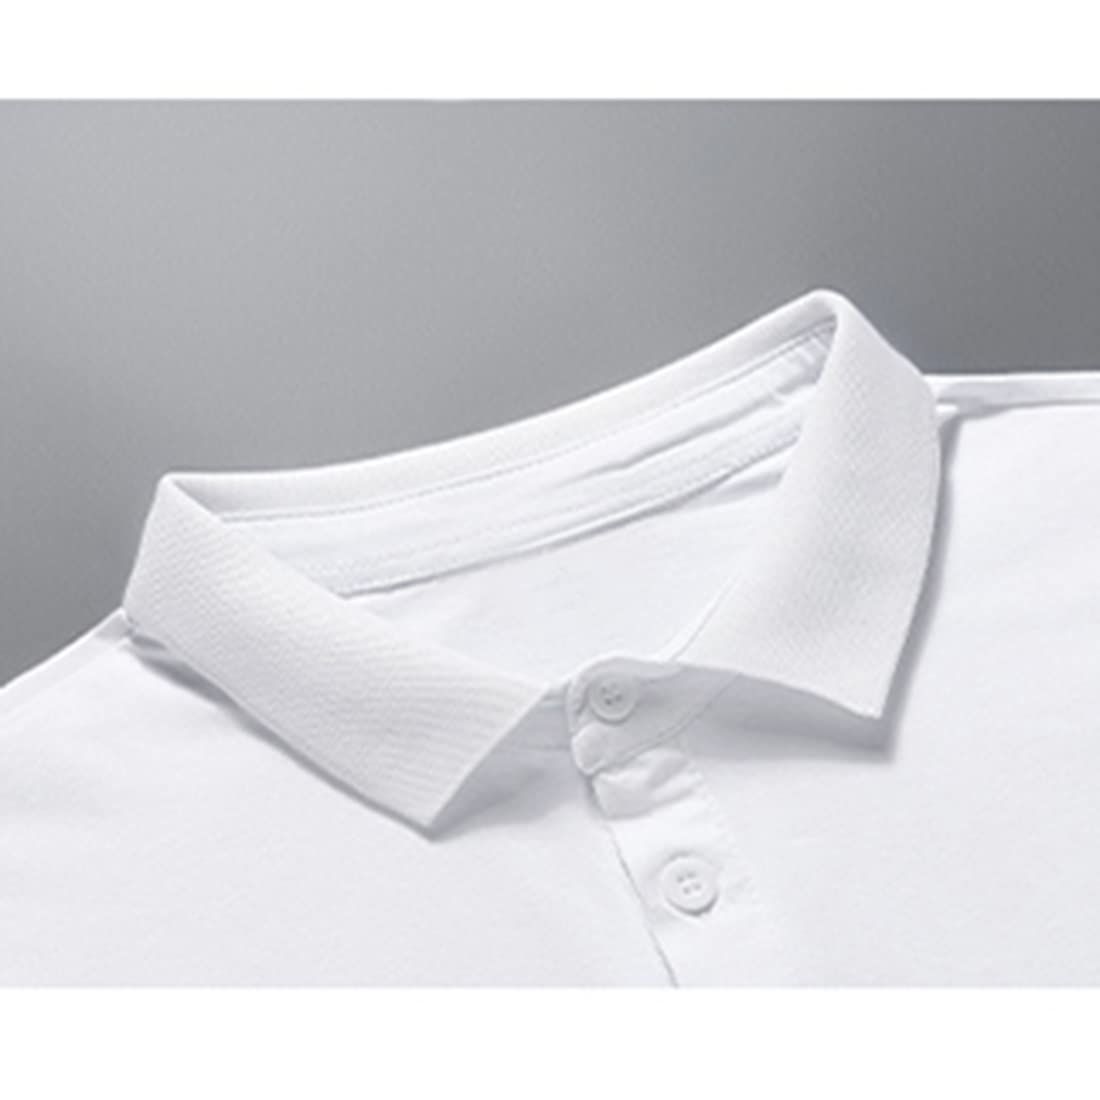 OKJCON メンズ ポロシャツ 半袖 夏 薄手 tシャツ 無地 ビジネス カジュアル おしゃれ 大きいサイズ